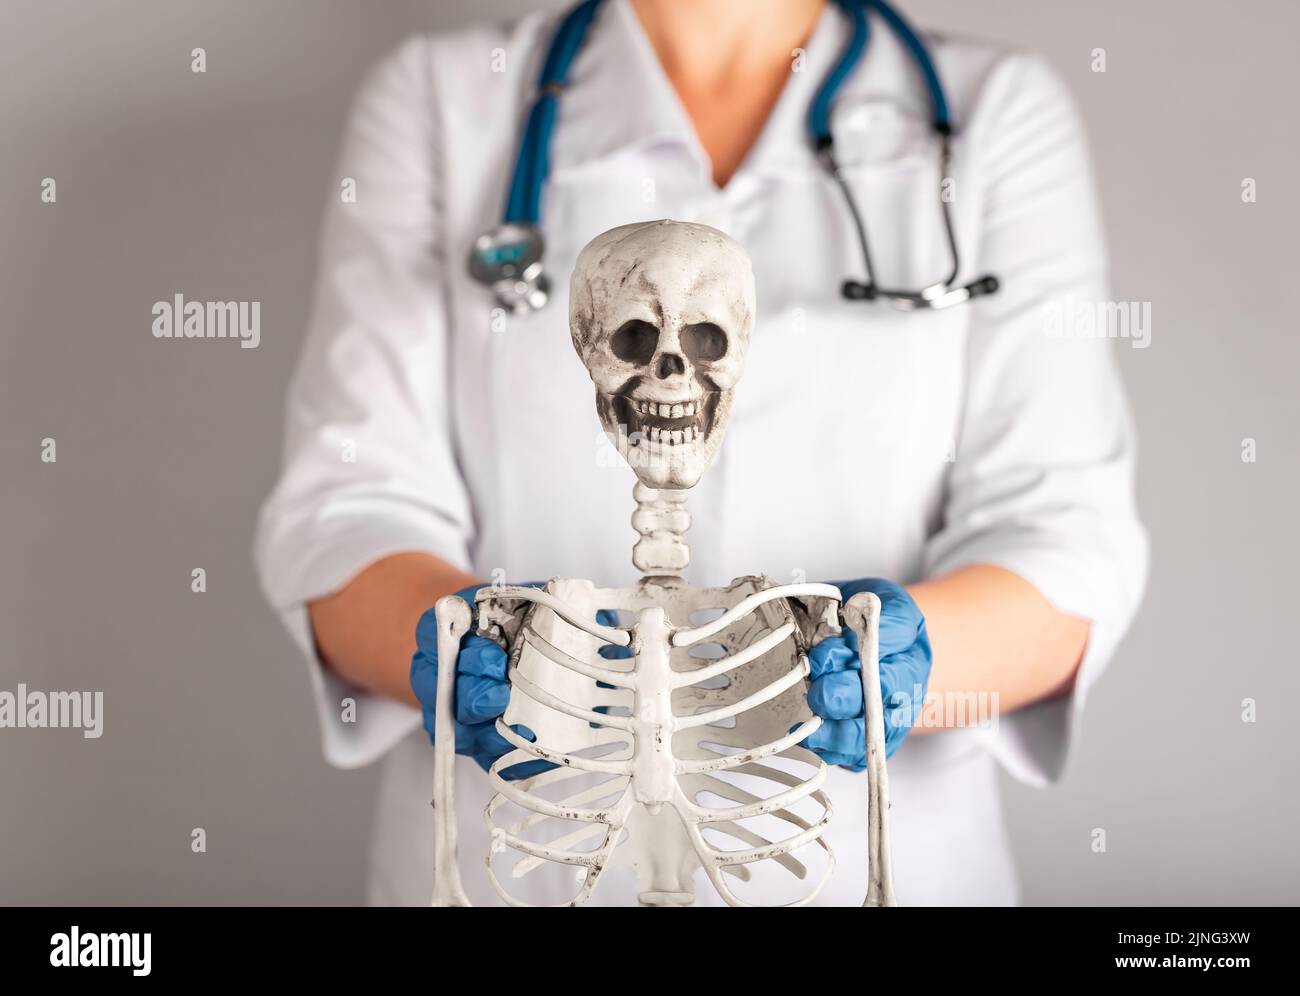 Arzt zeigt menschliches Skelett. Frau im Labormantel mit Stethoskop, die den Studenten Anatomie beibringt. Anatomie des Skelettsystems, Körperstruktur, medizinische Ausbildung Stockfoto